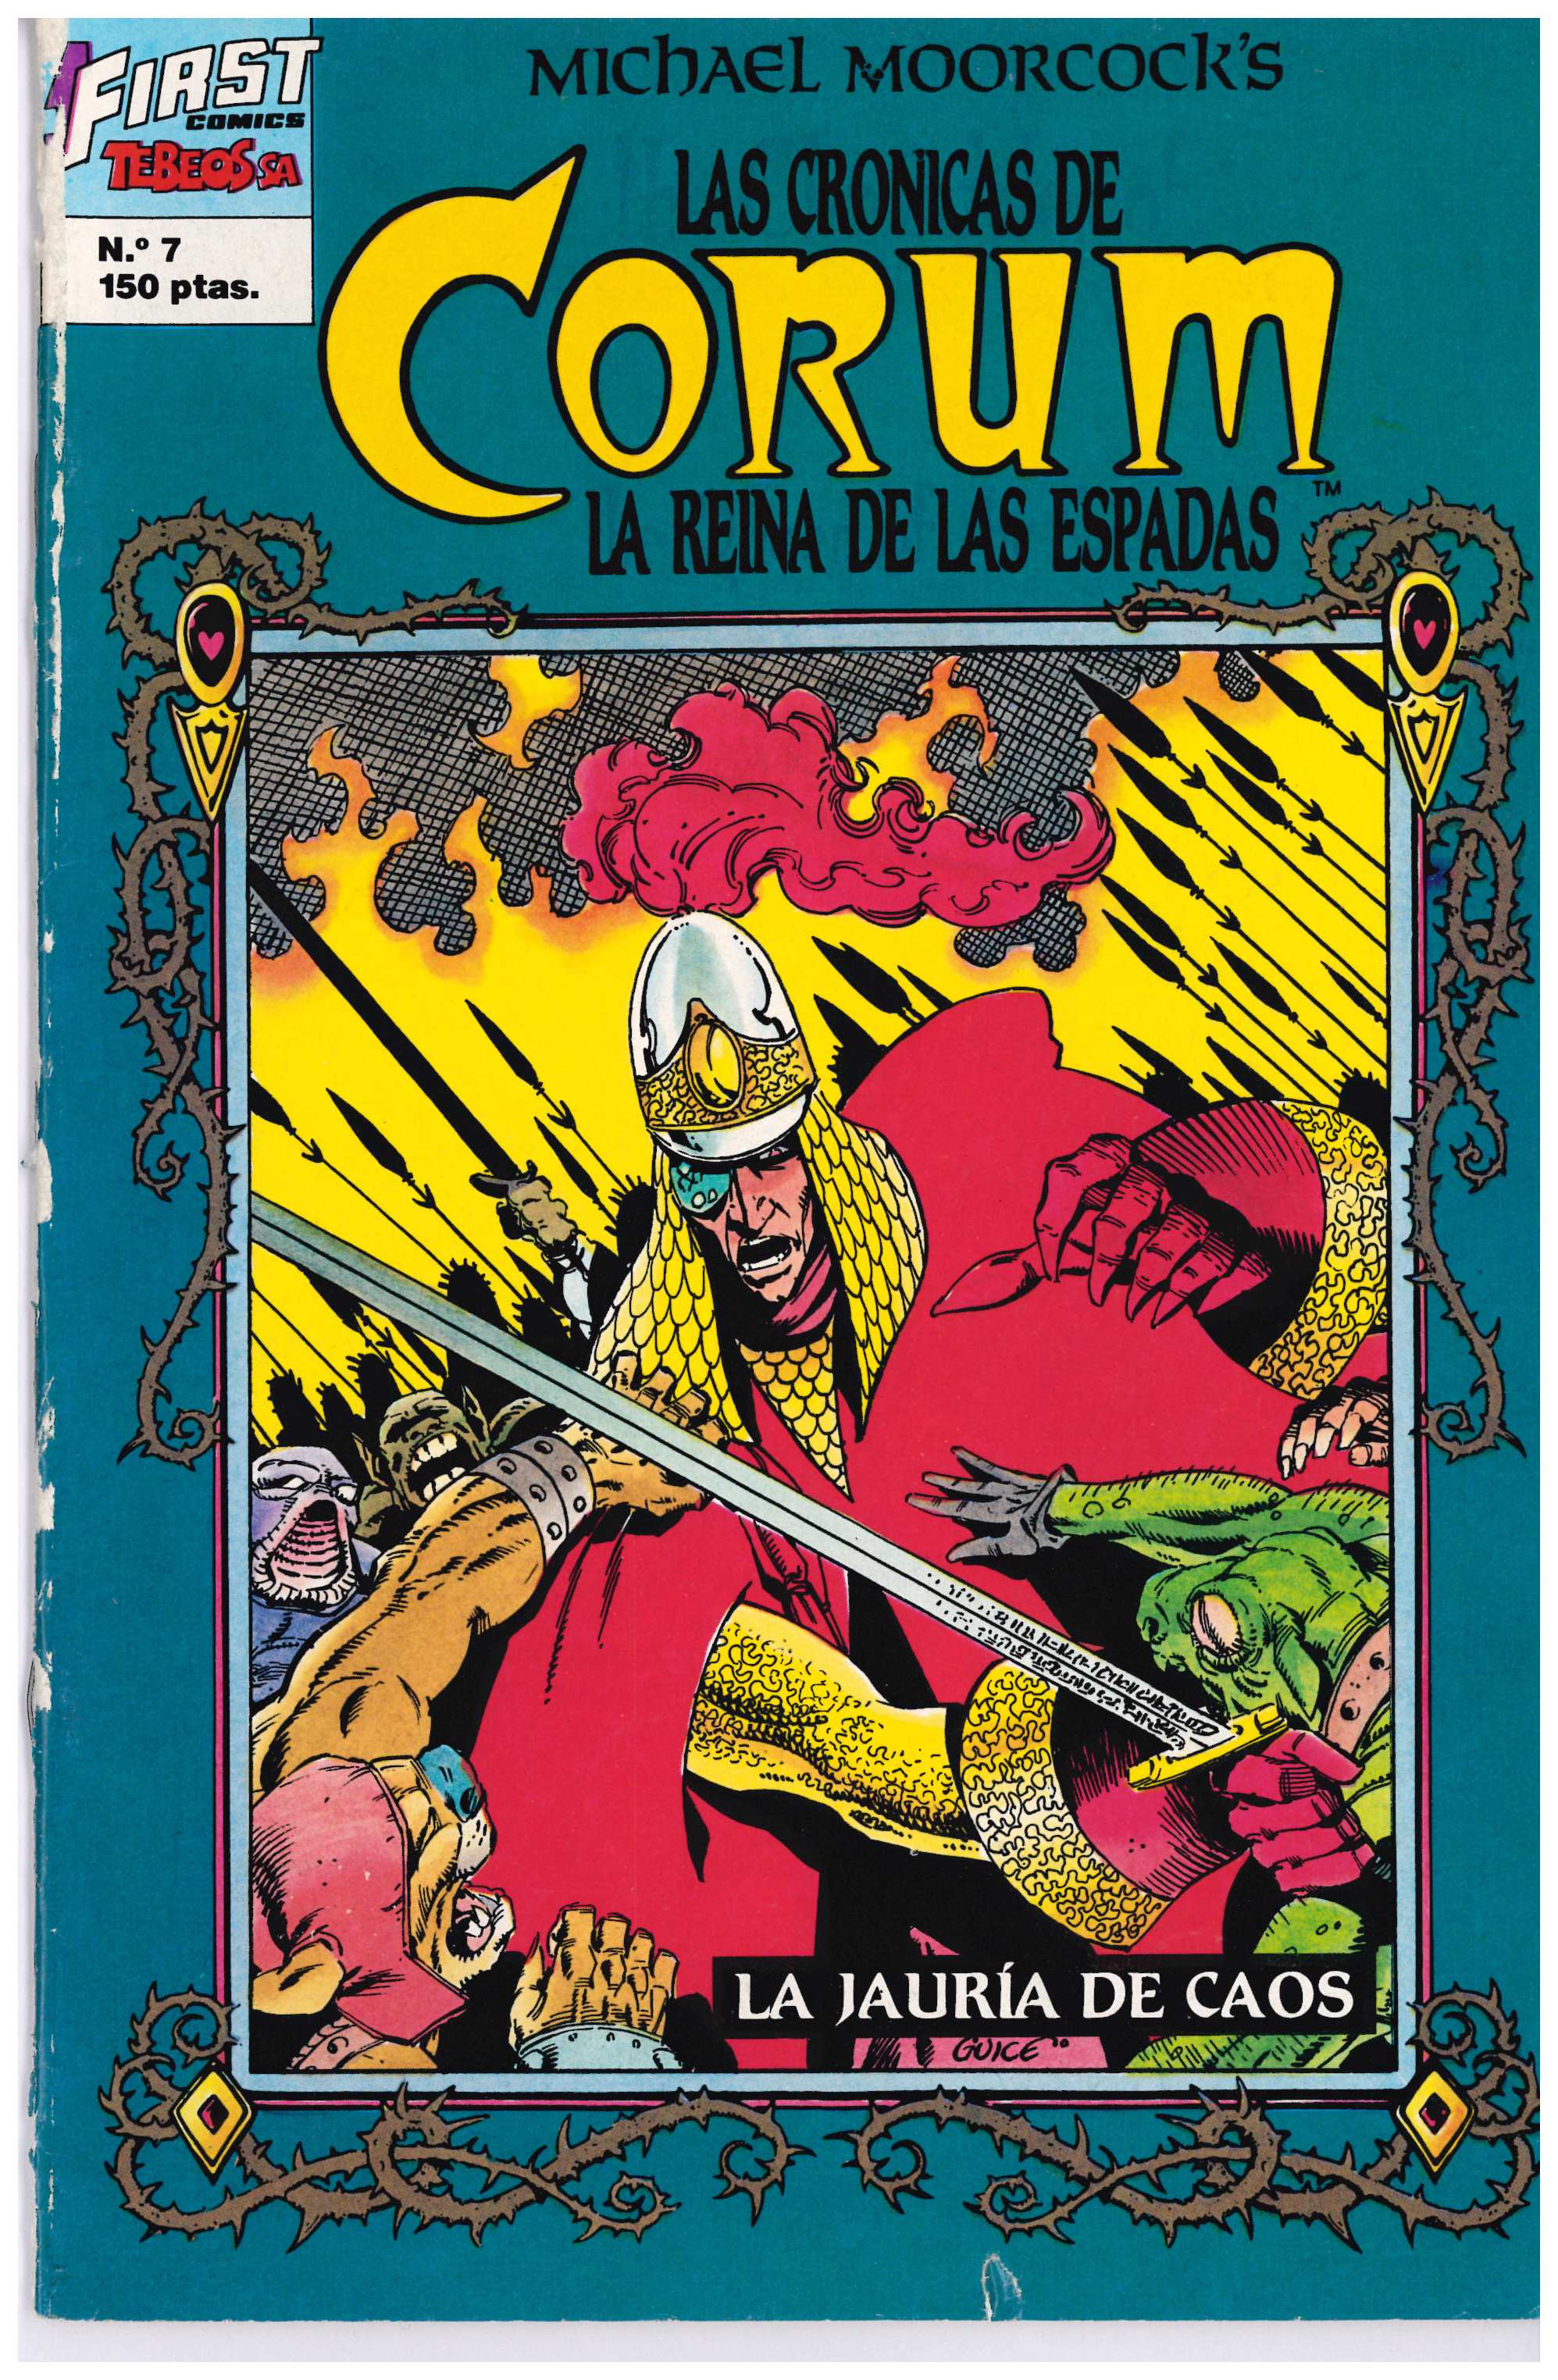 Las Crónicas de Corum. Ediciones B 1988. Nº 7